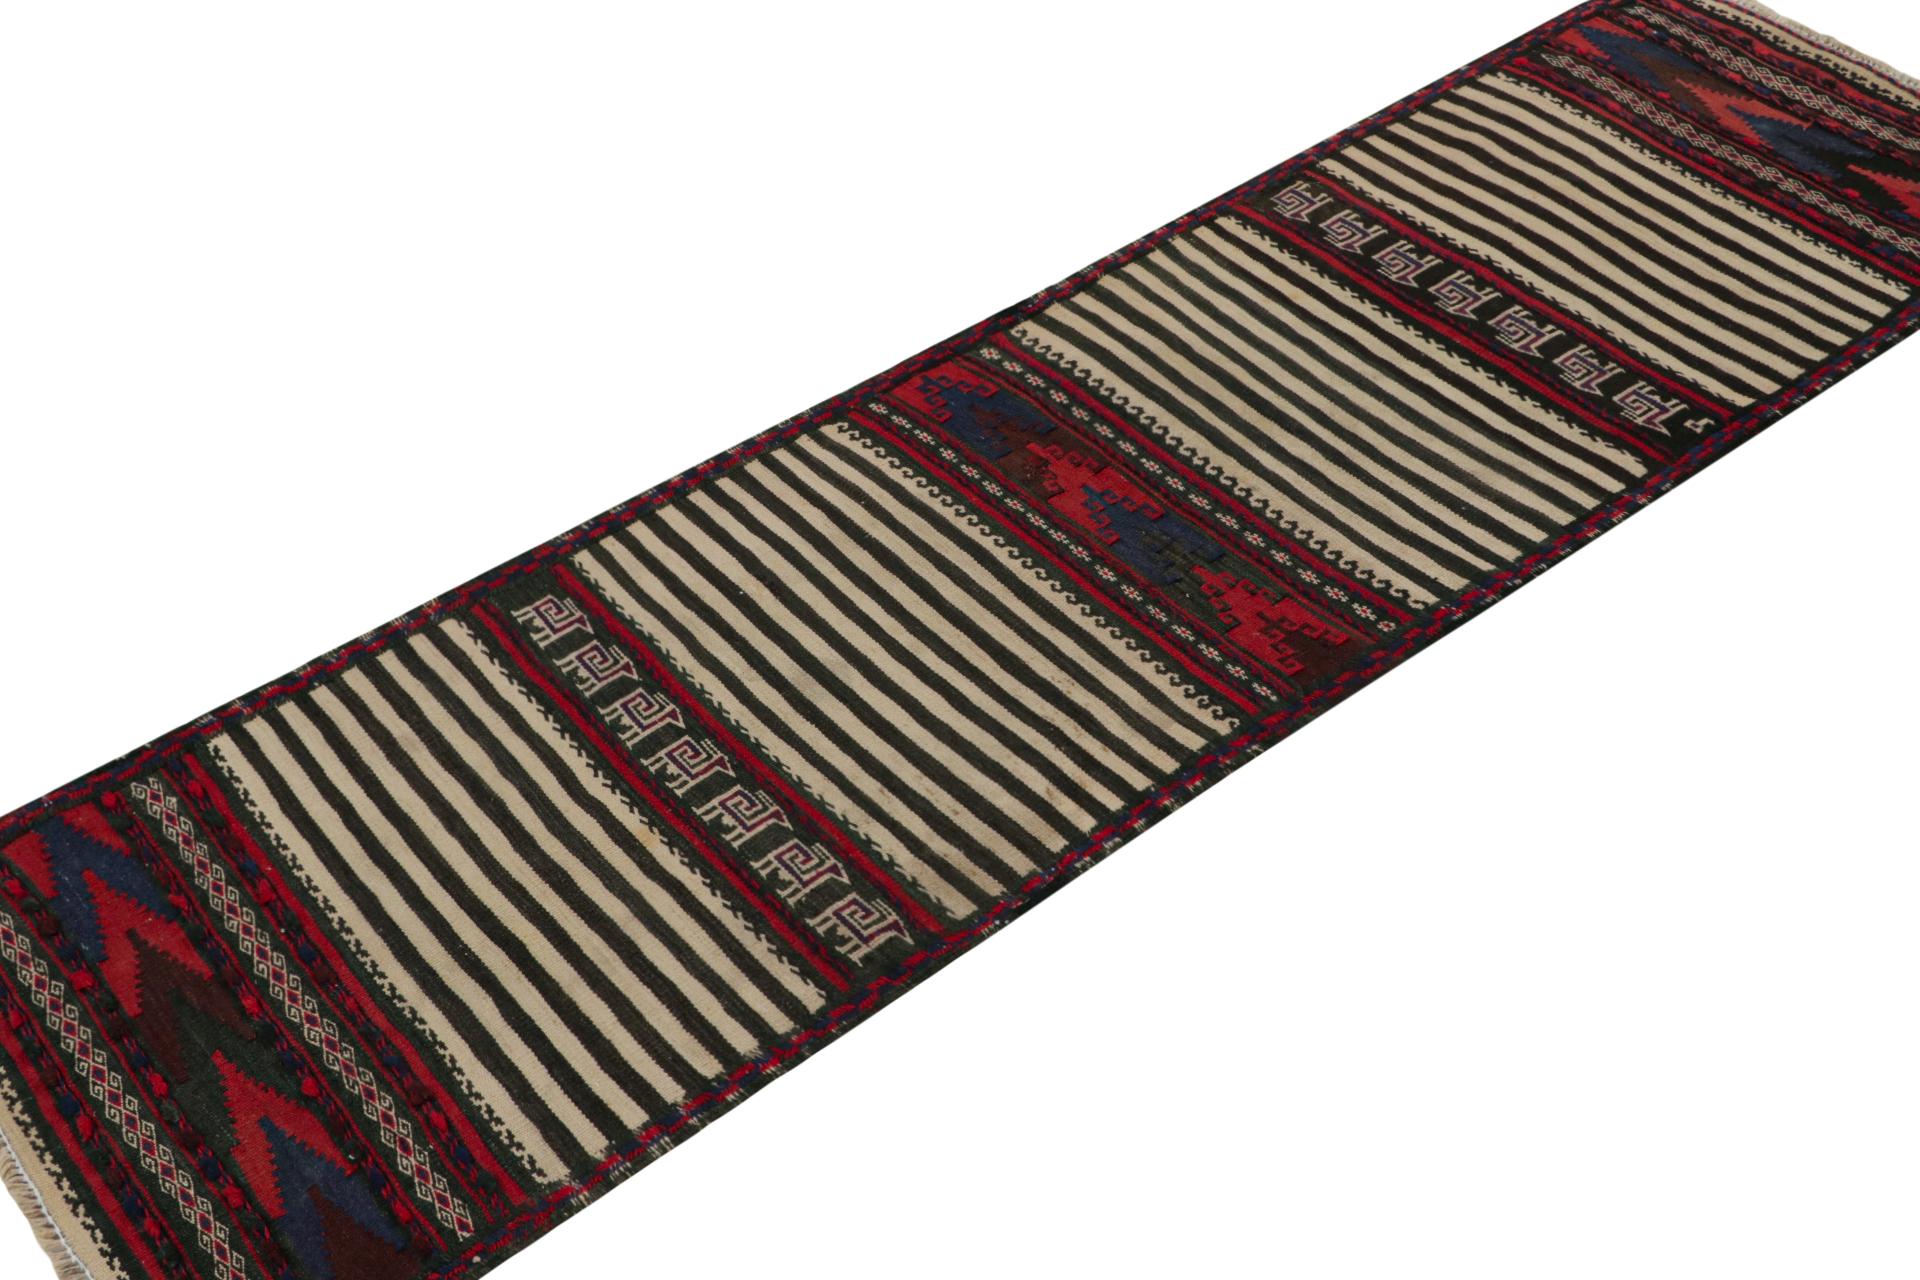 Dieser handgewebte afghanische 2x7-Stammes-Kilim-Läufer aus Wolle (ca. 1950-1960) ist ein exquisites Stück aus dem Stammesleben, das im Nomadenalltag oft als Tischdecke verwendet wurde, ähnlich wie persische Sofreh-Kilims. 

Über das Design: